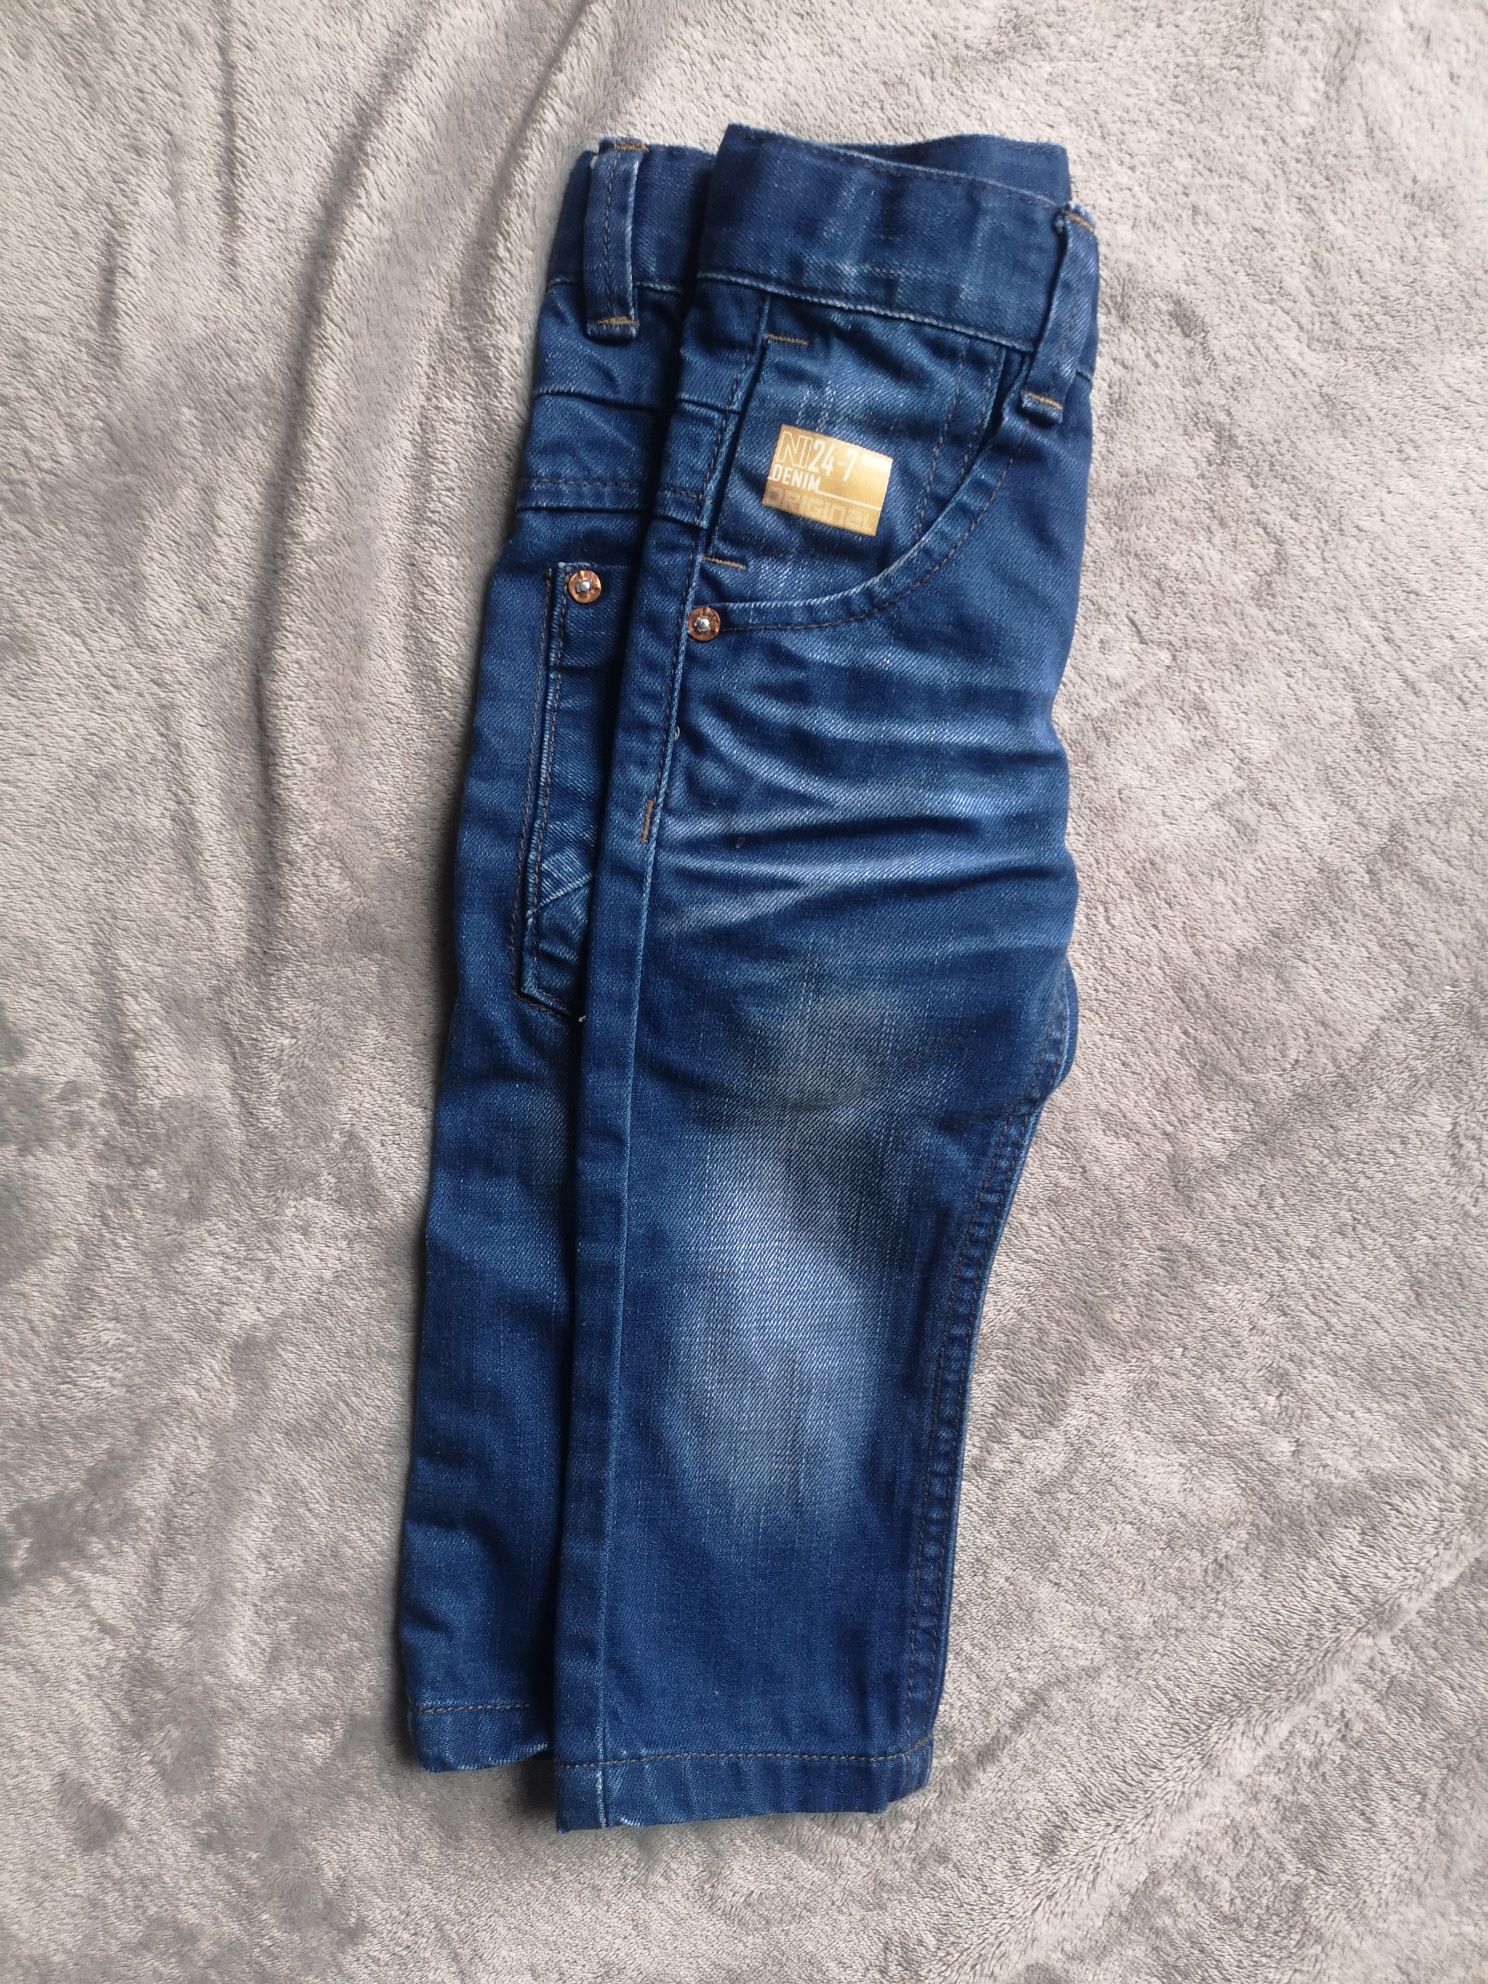 Jeansy dla chłopca na 9-12 m-cy (74-80 cm)